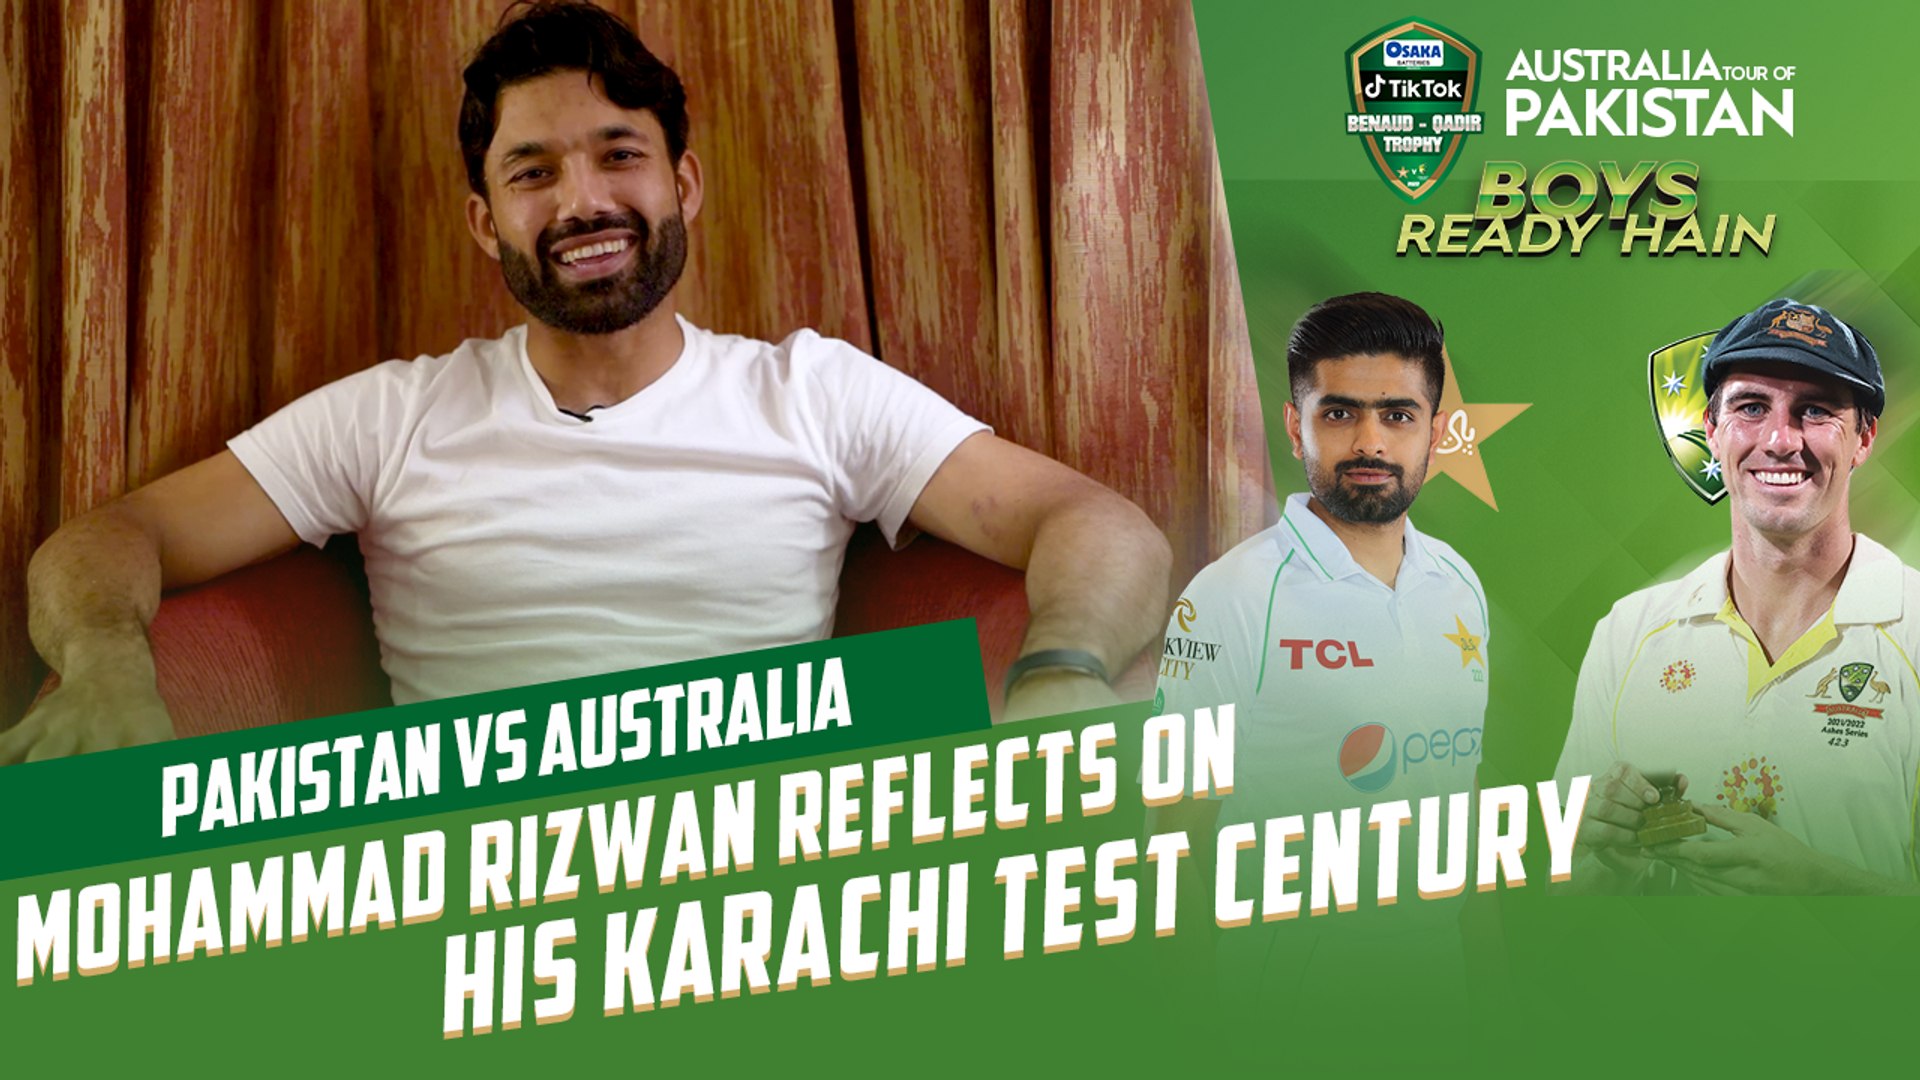 Mohammad Rizwan reflects on his Karachi Test century Pakistan vs Australia MM2T